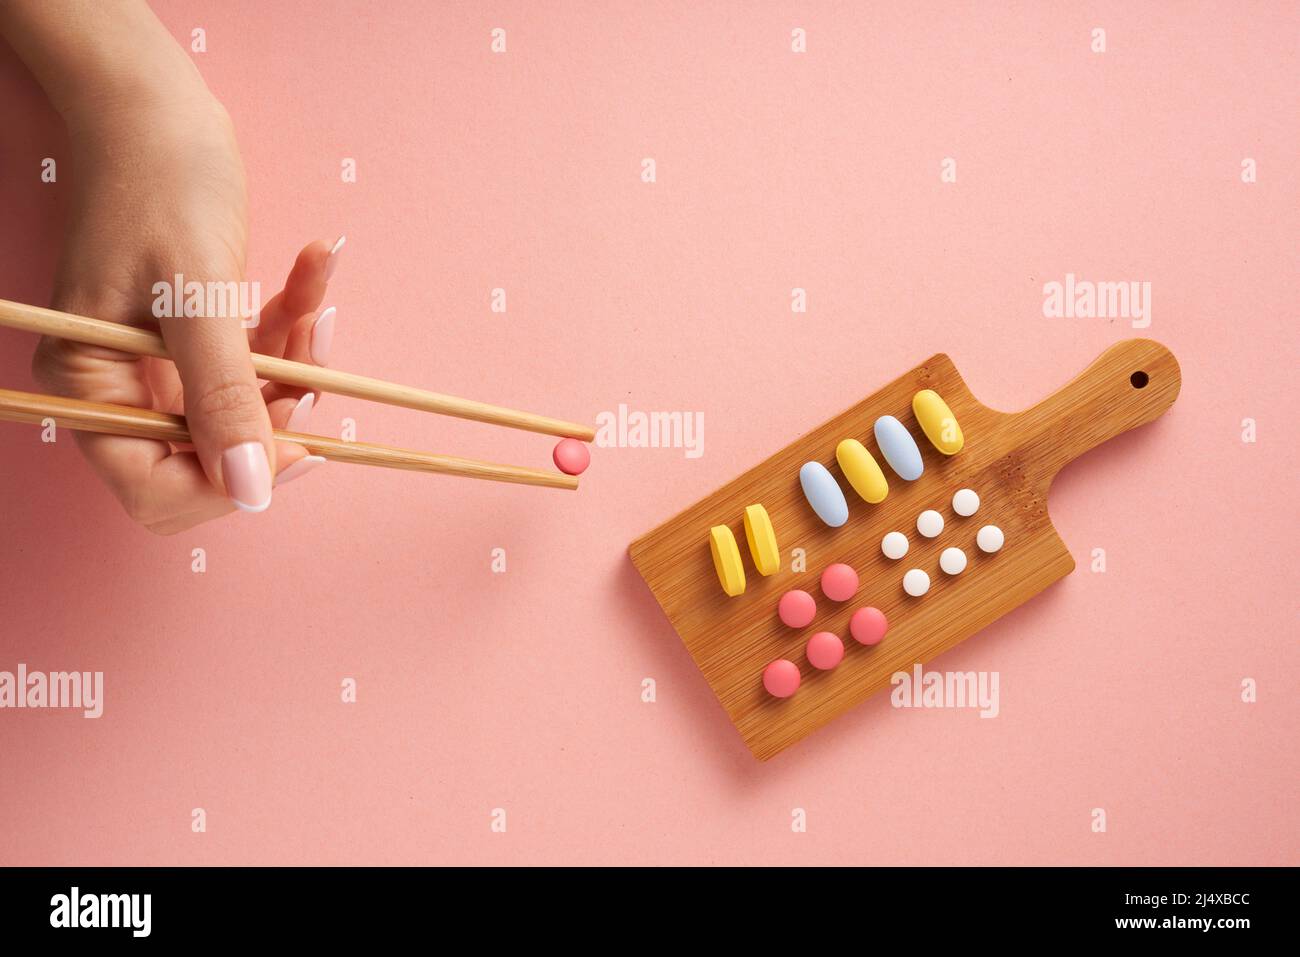 Concepto creativo plano de la foto con la variedad de vitaminas del suplemento nutritivo y de las píldoras dispuestas como plato del sushi sobre fondo rosado. Diseño mínimo. Foto de stock